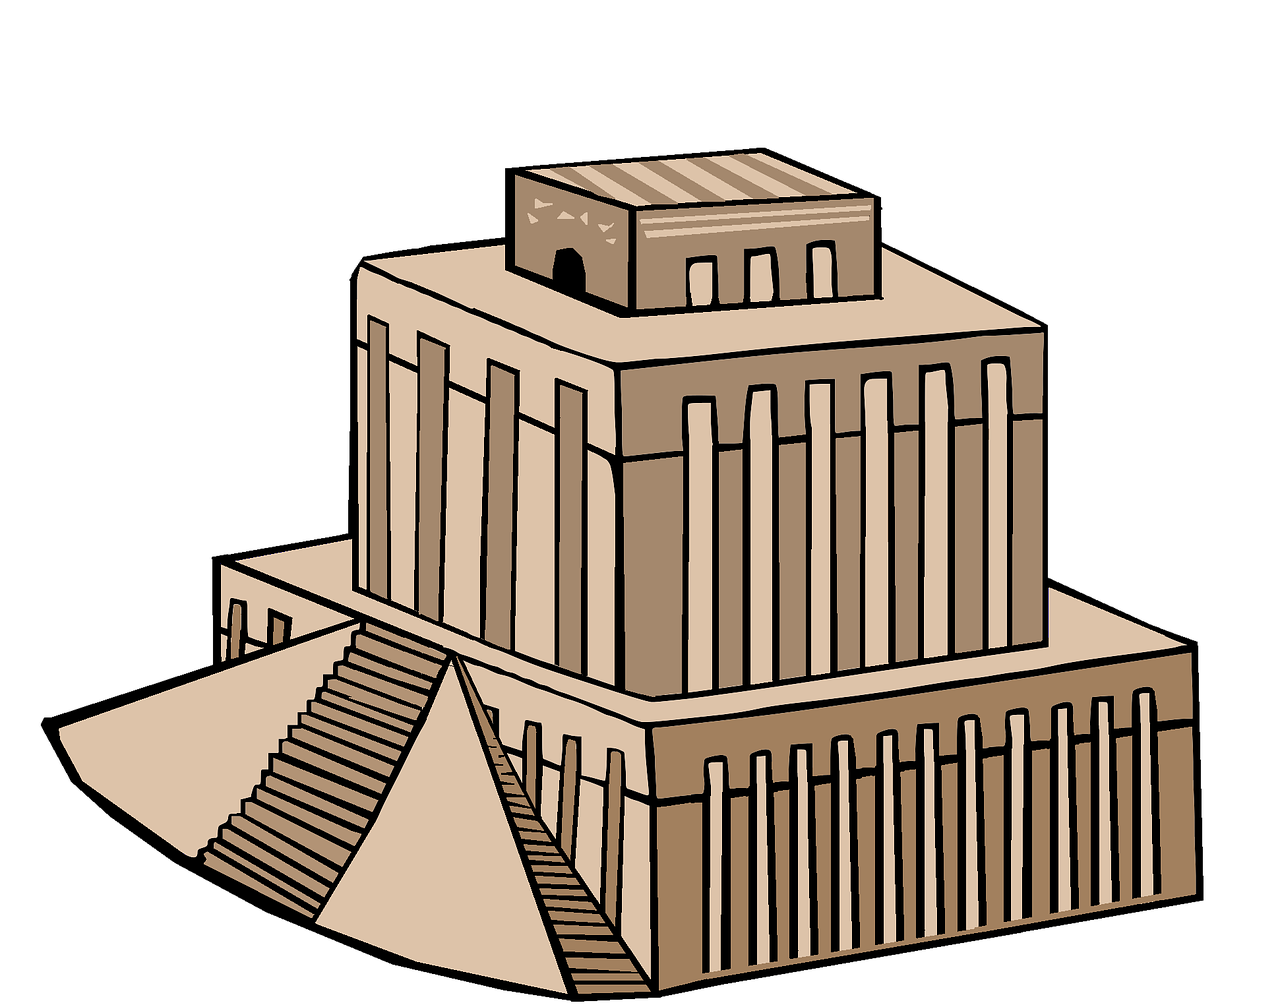 Šventykla, Zigguratas, Babilonas, Babilonietis, Babilono Šventykla, Akmens Pastatas, Pastatas, Iraq, Babilonų Architektūra, Architektūra